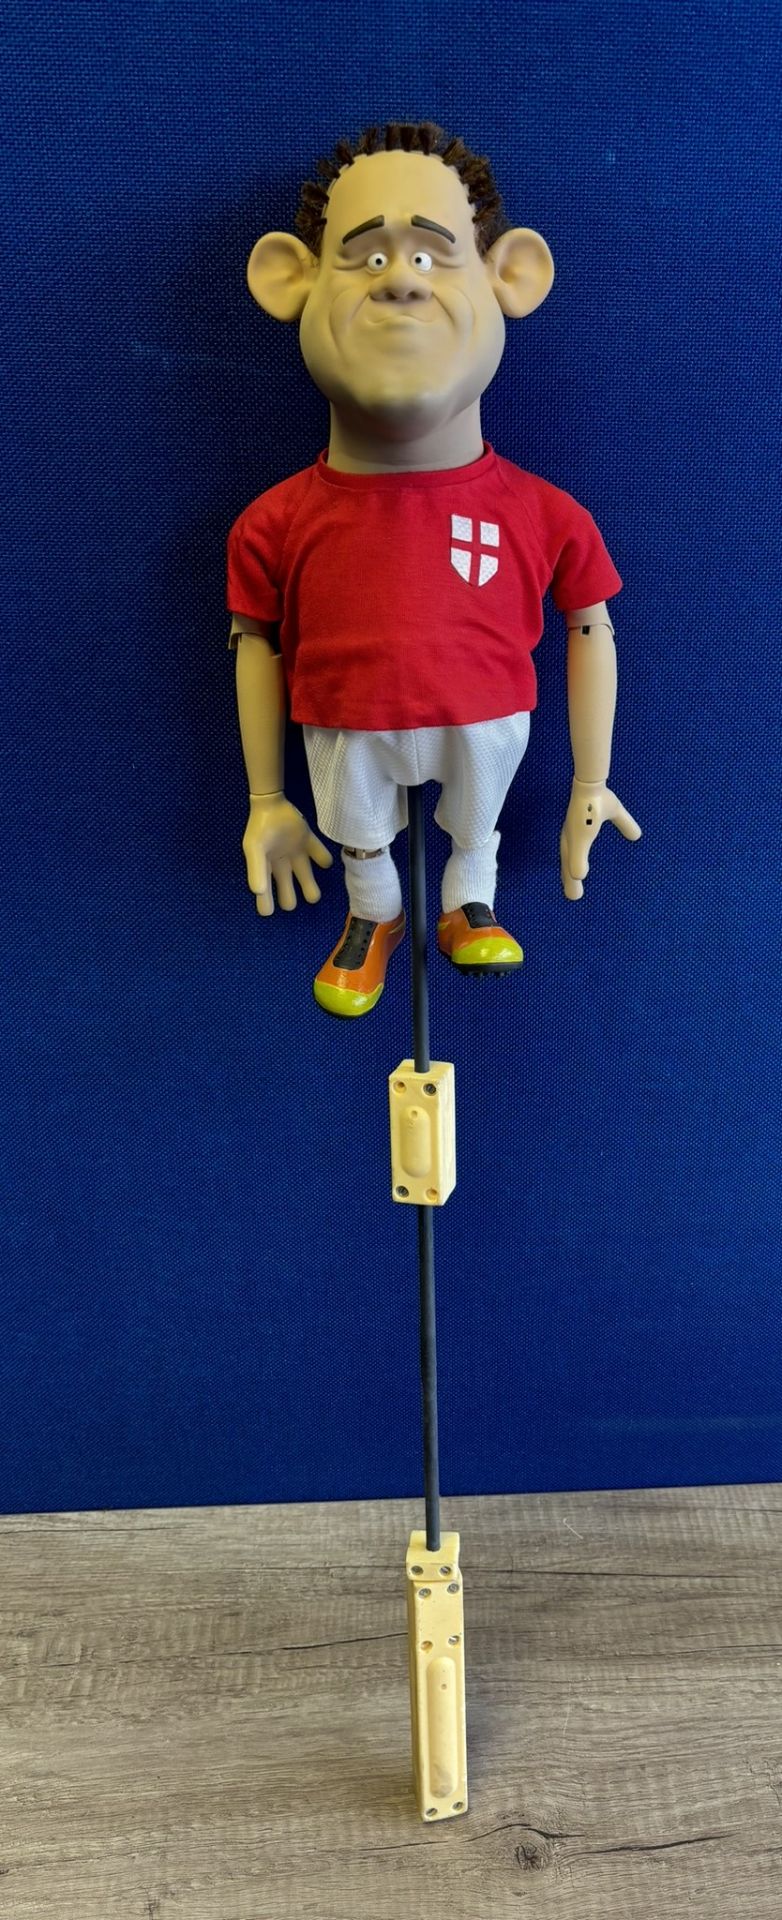 Newzoid puppet - Wayne Rooney - Image 3 of 3